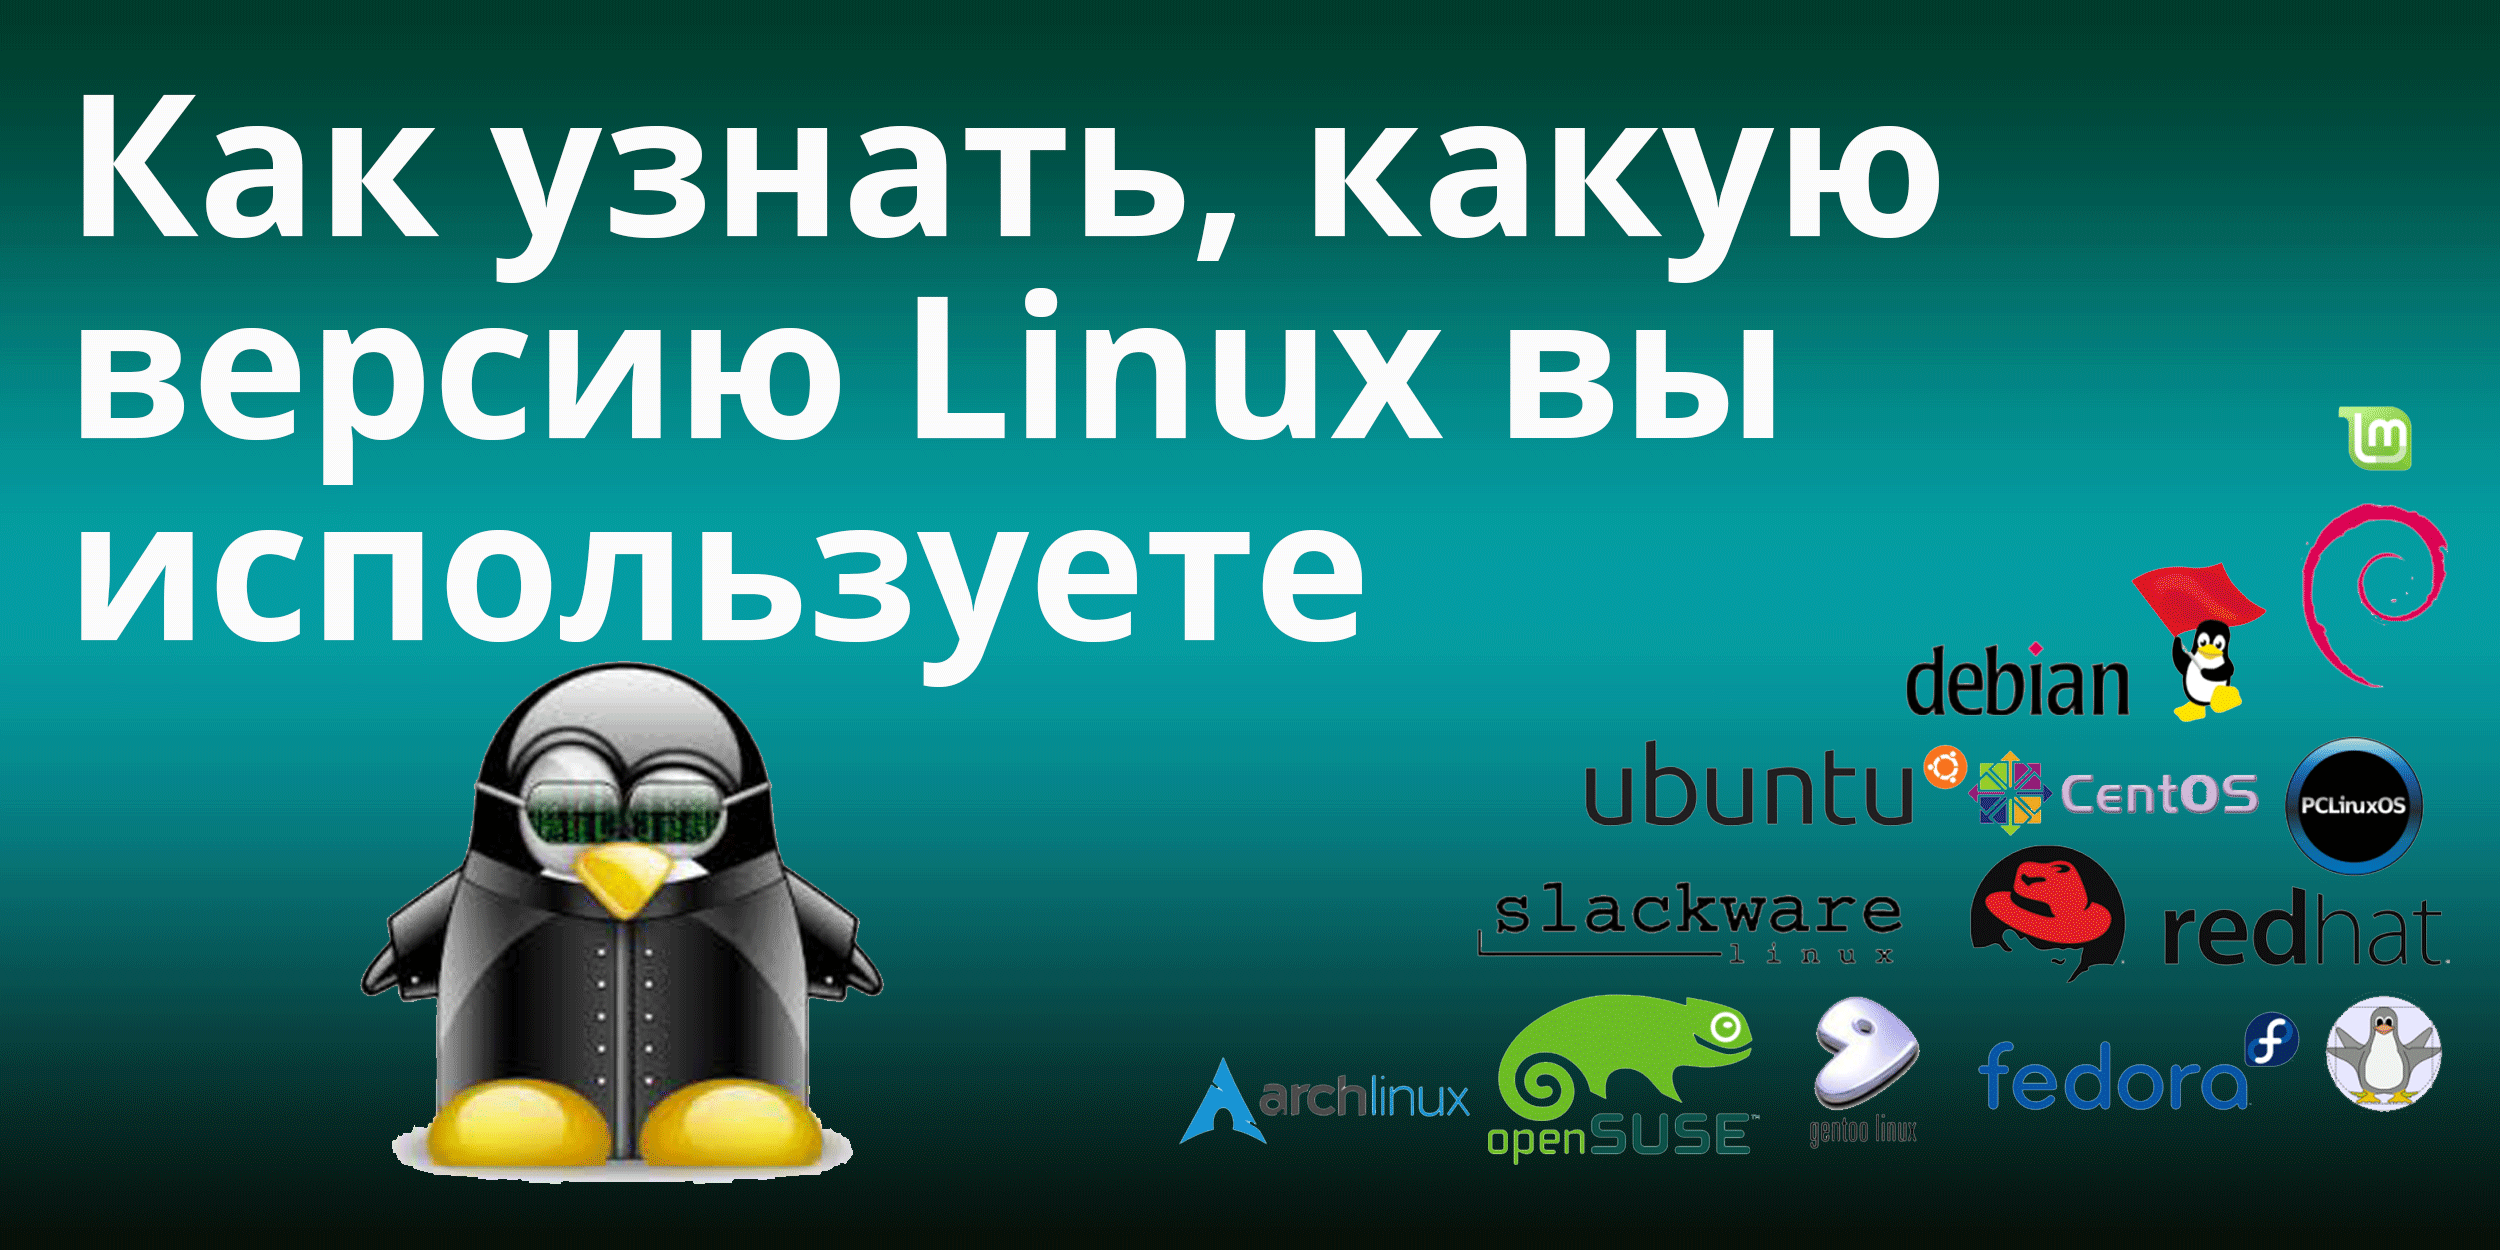 В этой статье мы постараемся разобраться и выяснить, как узнать версию Ubuntu, а также как узнать версию ядра, которая используется в системе